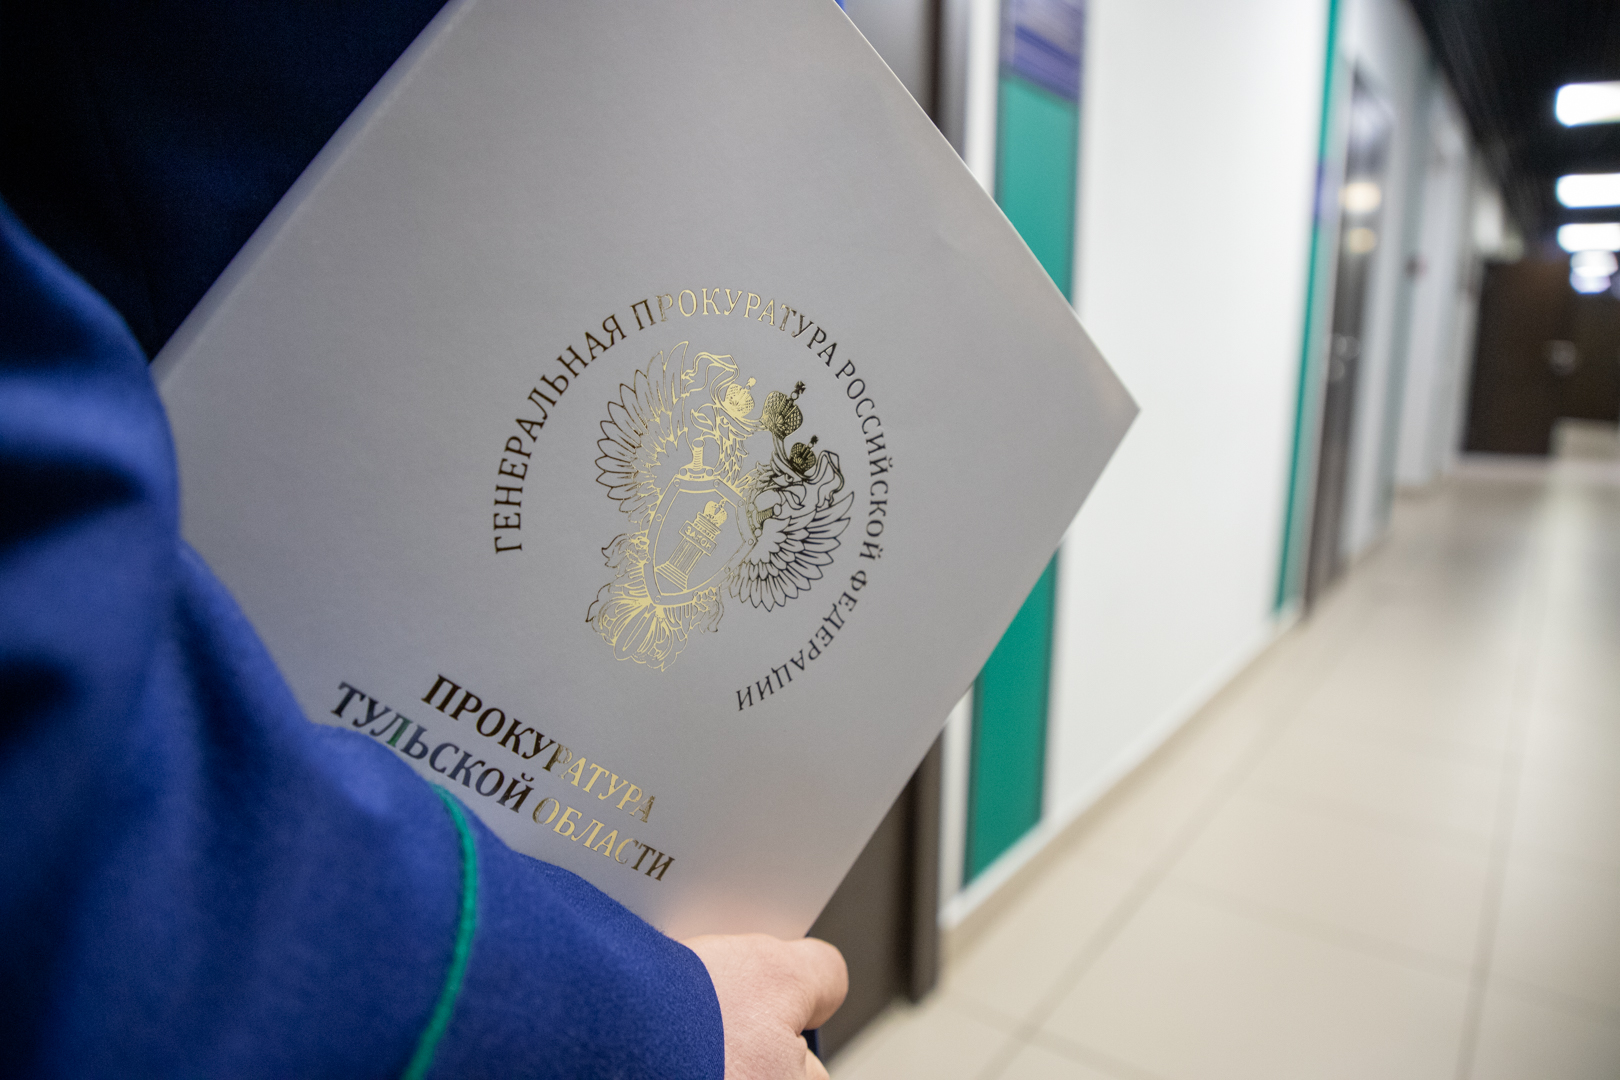 Жители одного из домов в Новомосковске пожаловались на подделку подписей в протоколе общего собрания